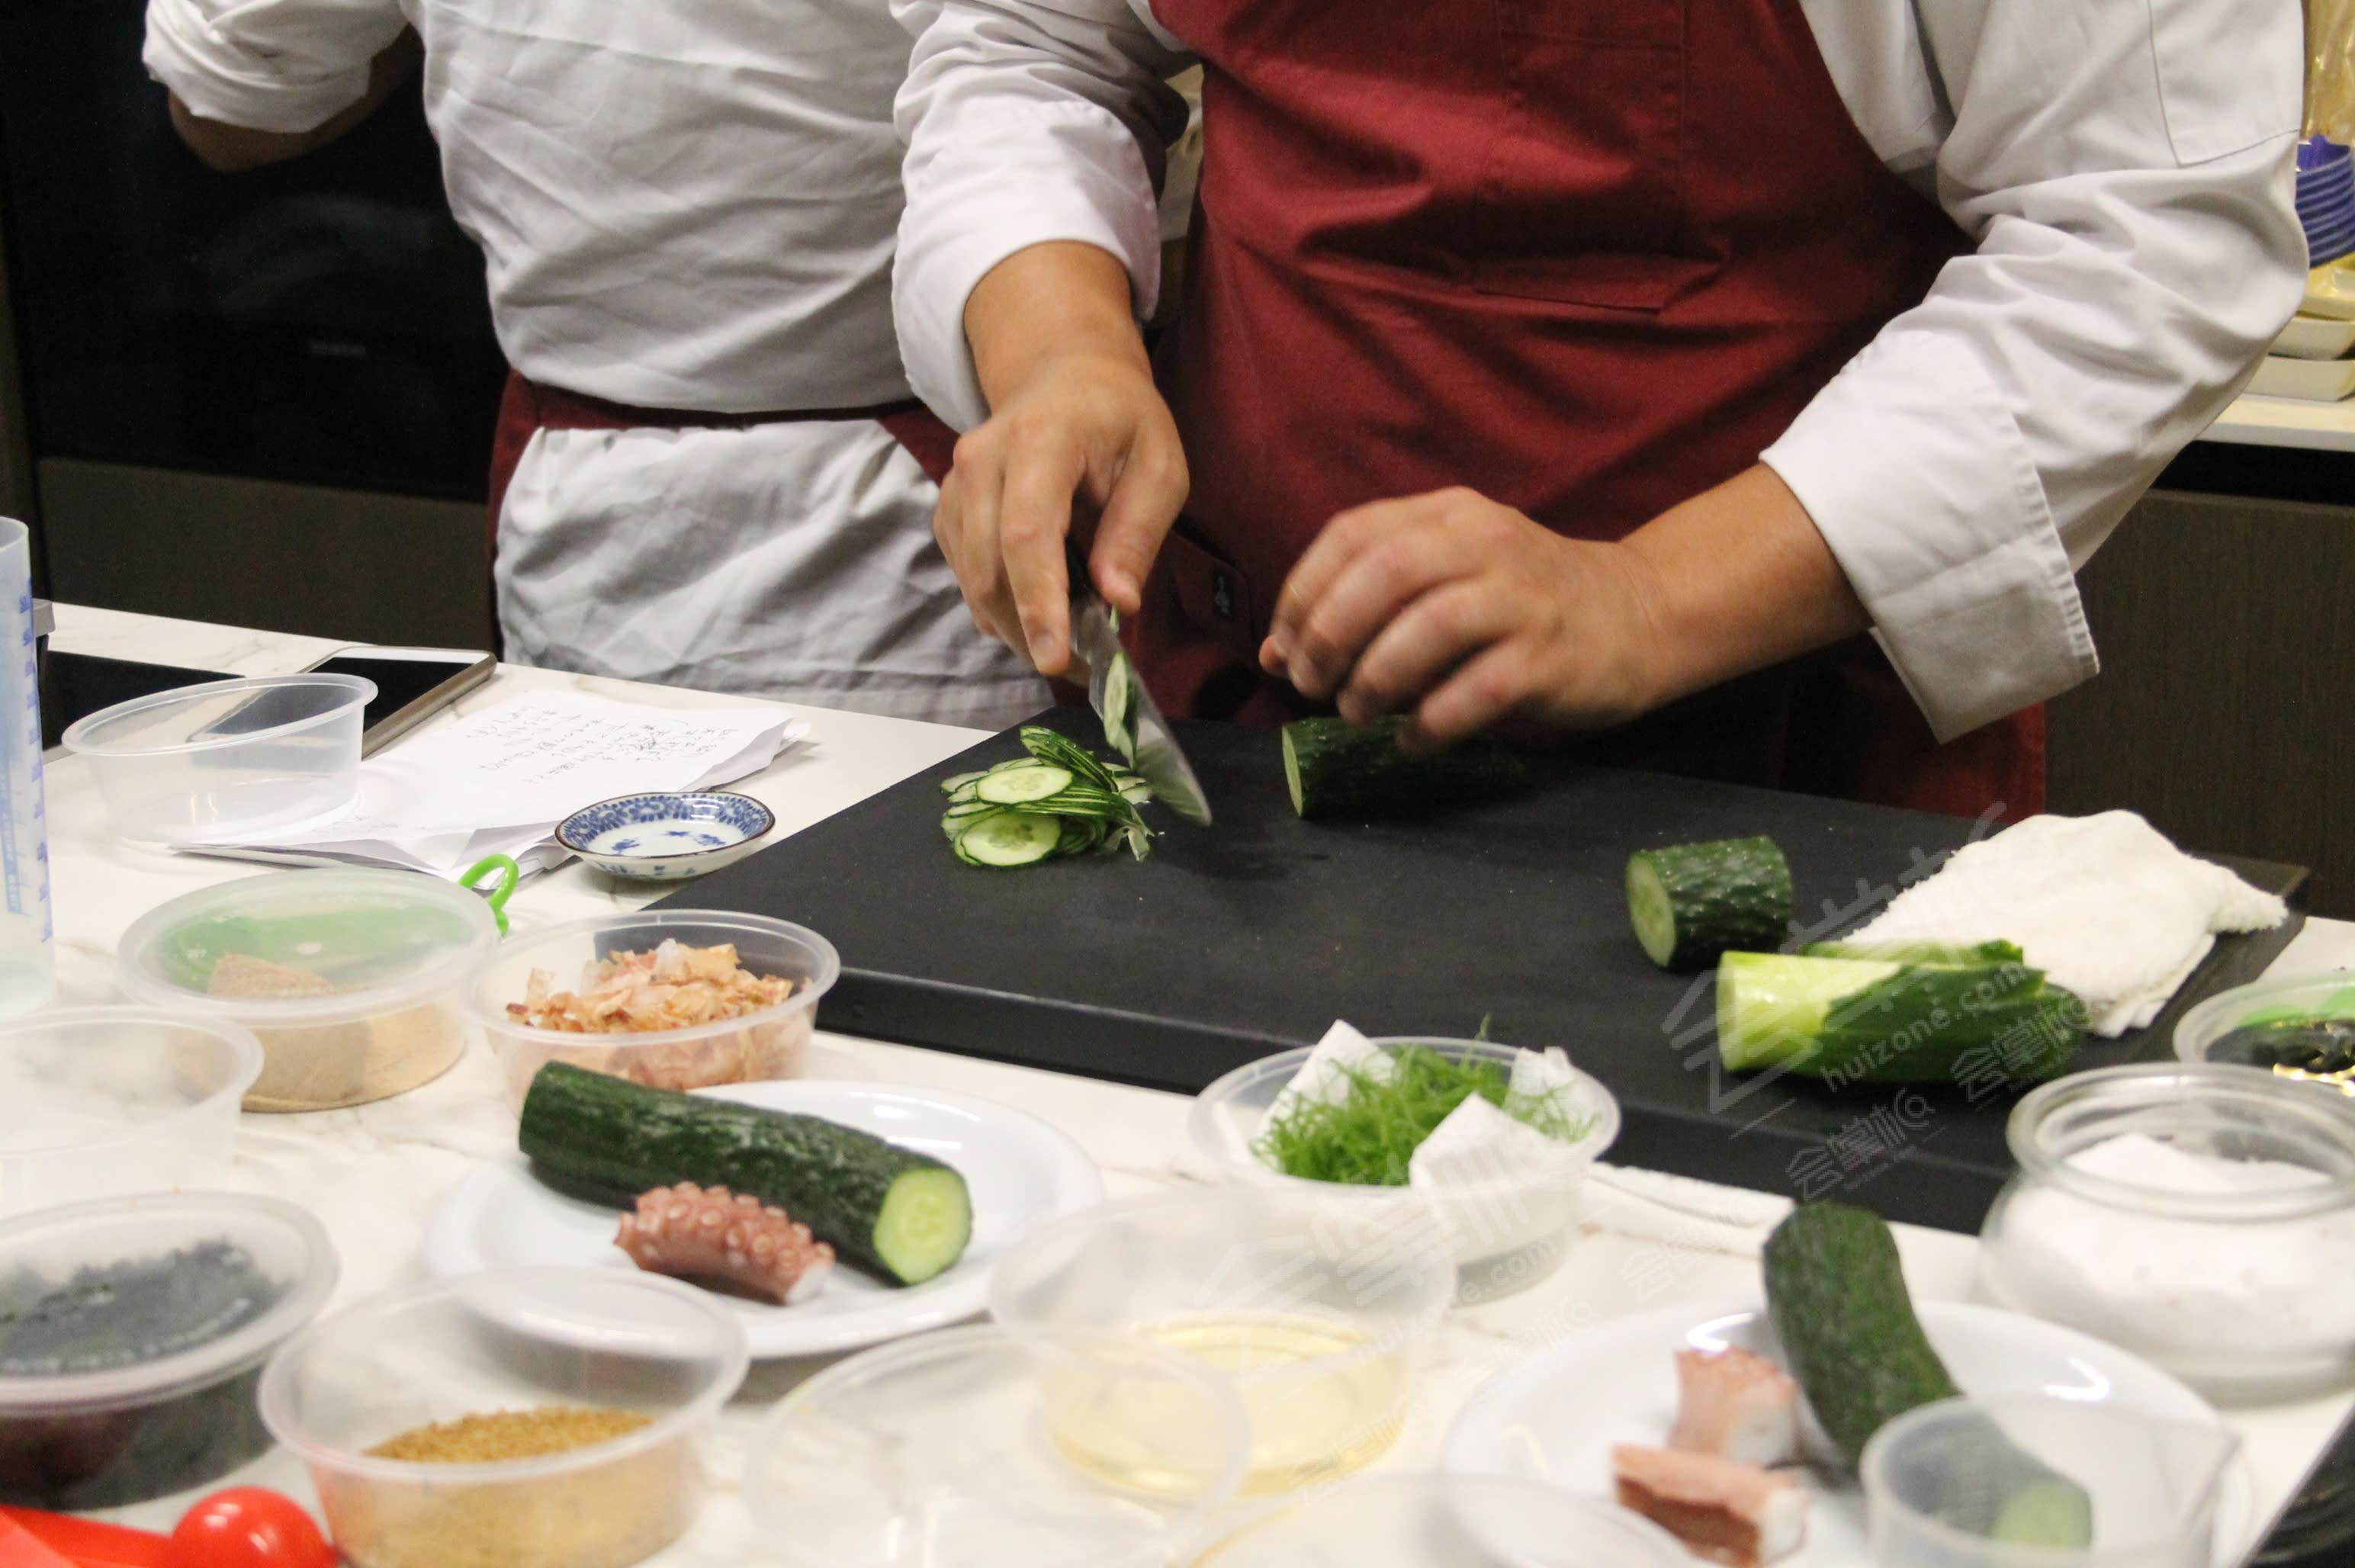 Espacio Gastronomico Minimalista Perfecto para Workshops de Cocina